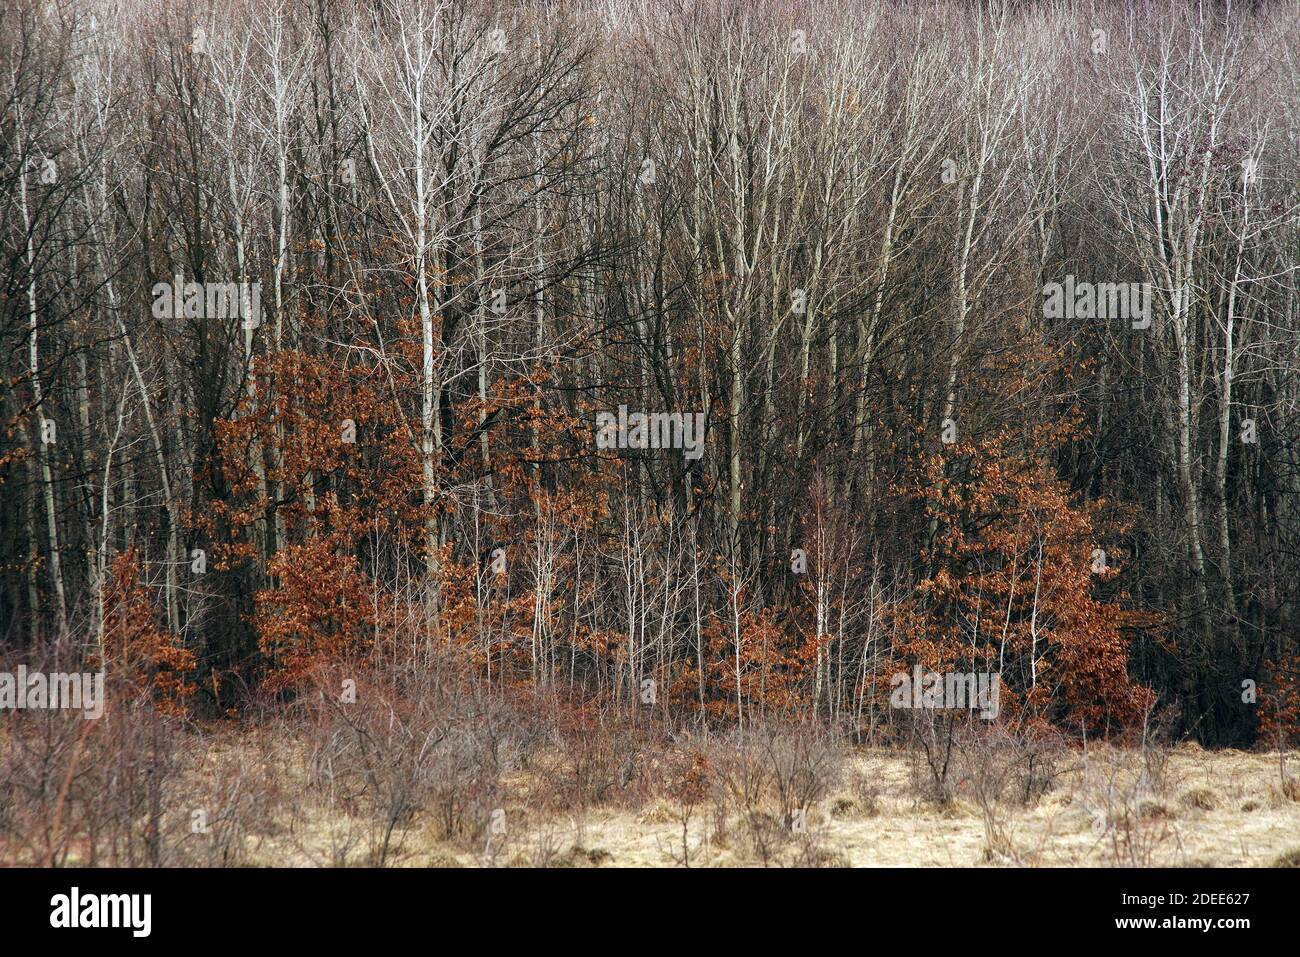 Autumn forest picturesque landscape Stock Photo